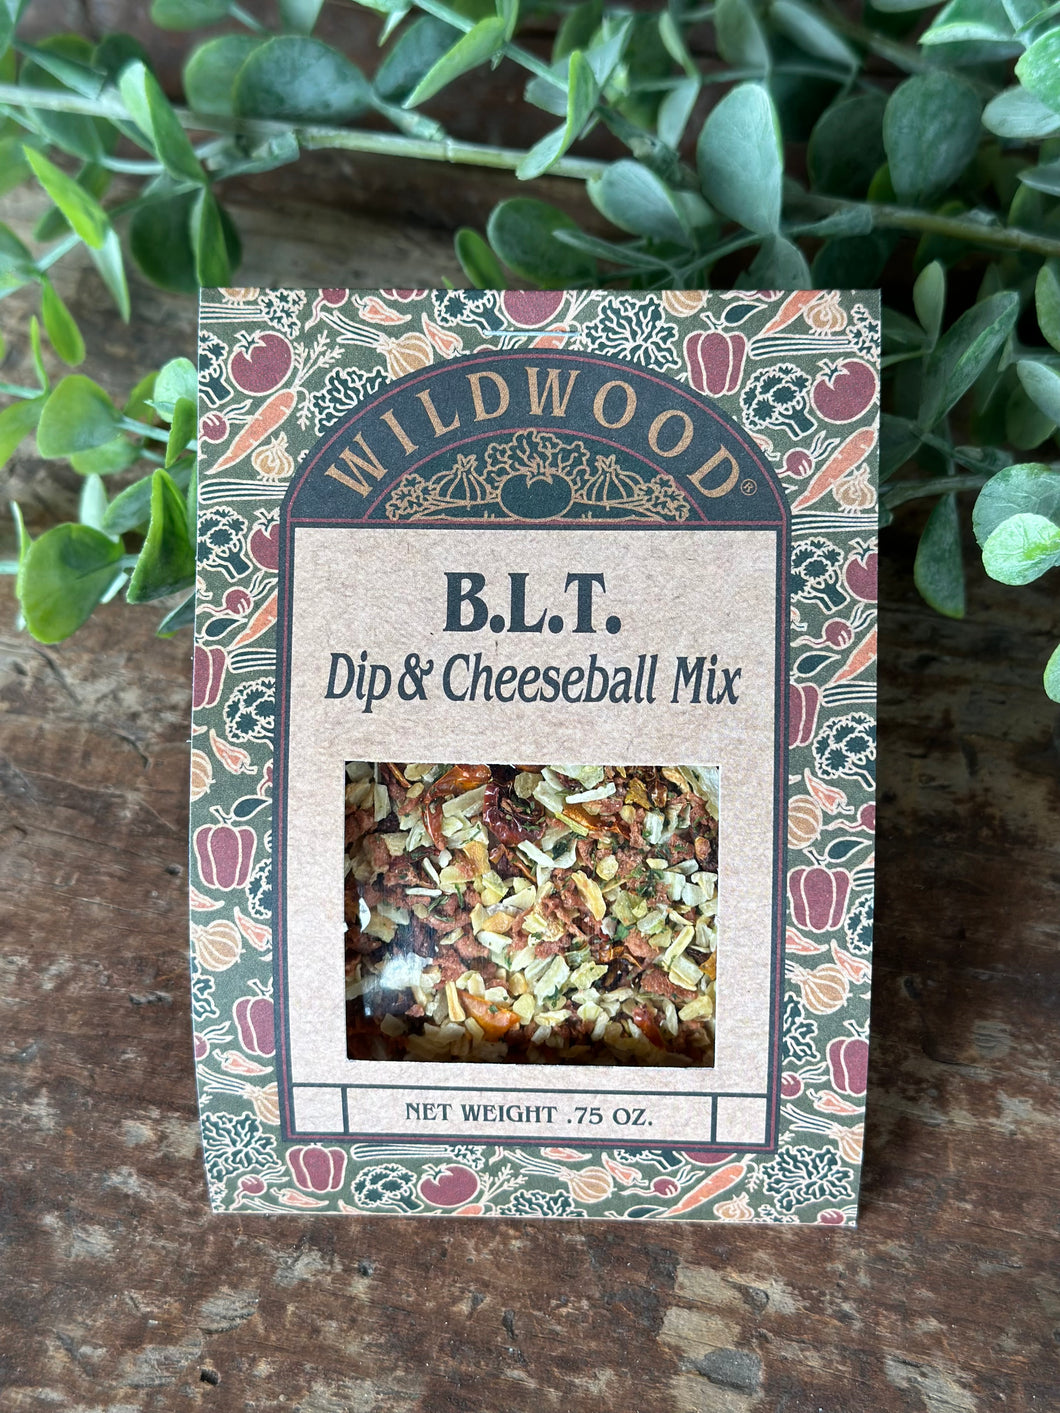 Wildwood B.L.T dip mix